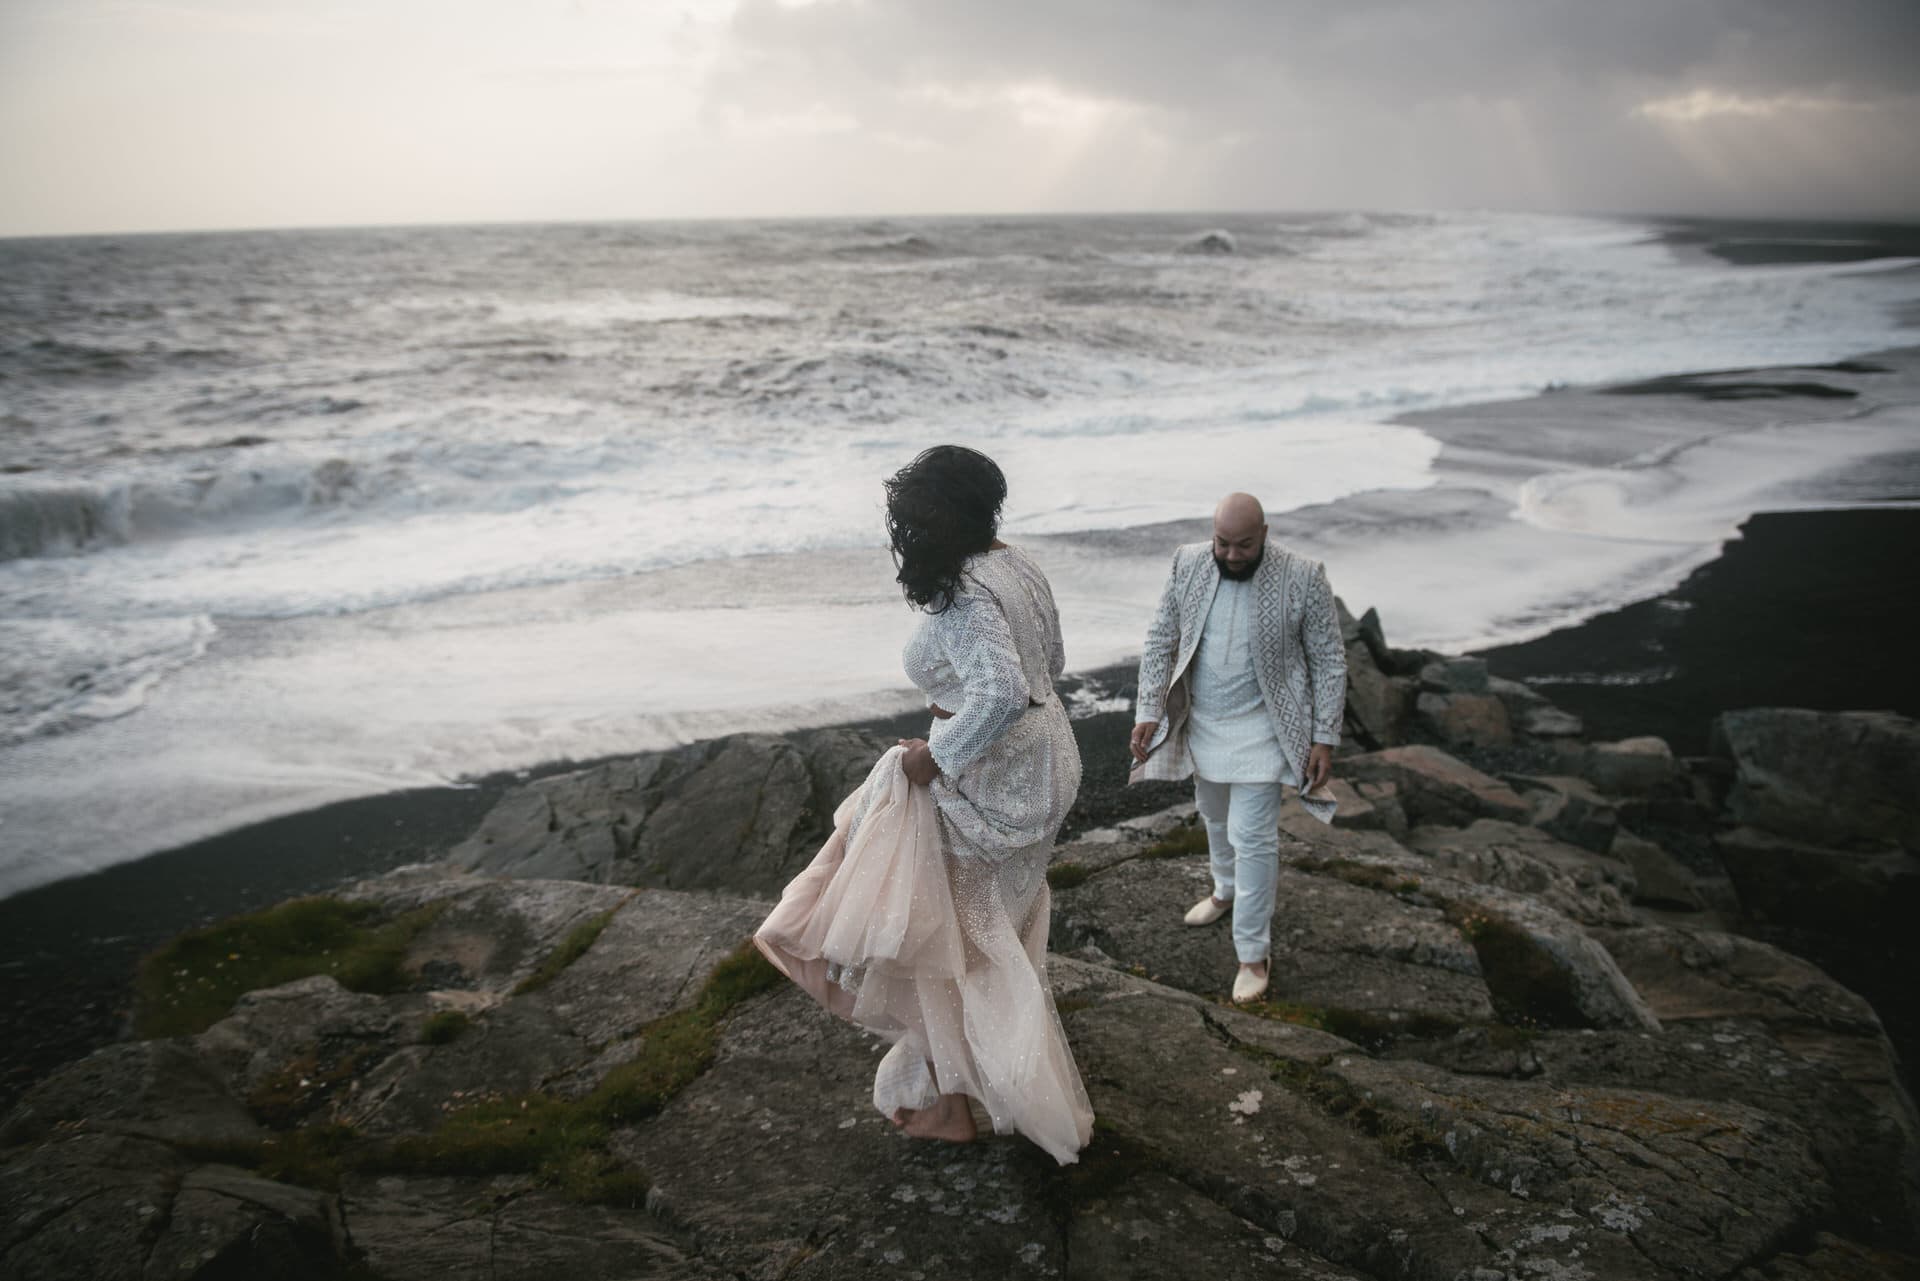 Icelandic windswept romance captured